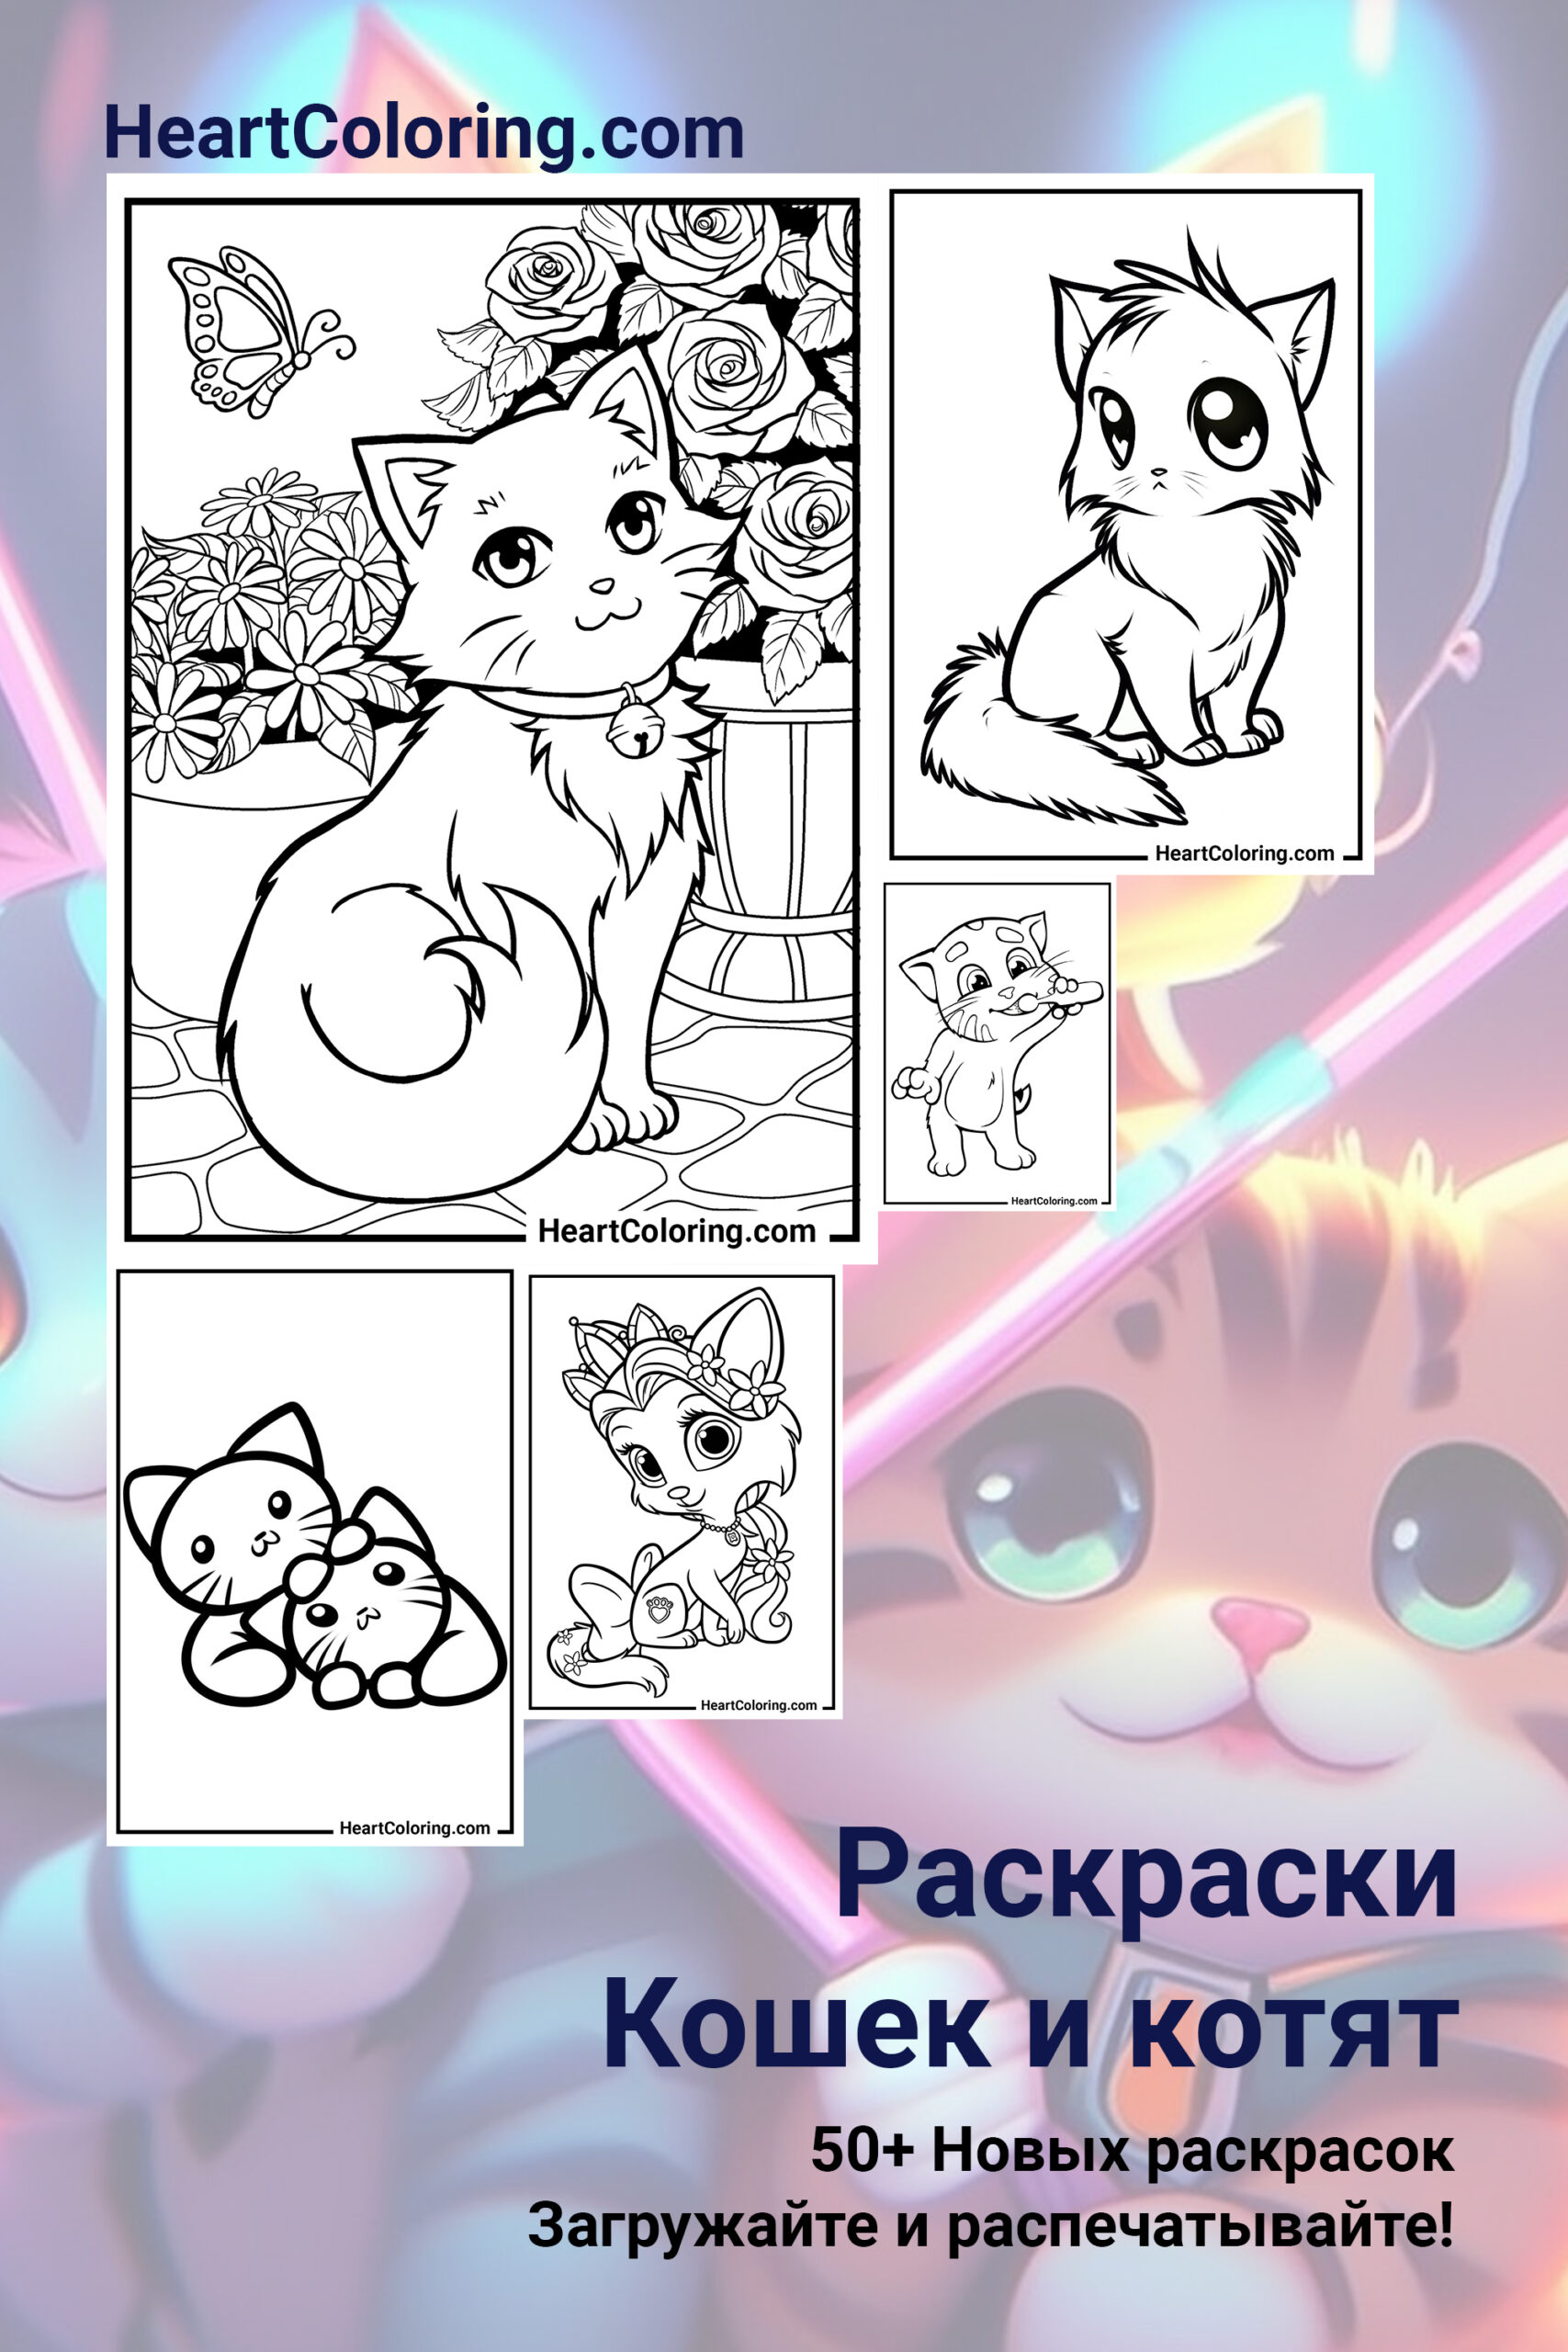 Кошки для детей нарисованные - картинки и фото centerforstrategy.ru